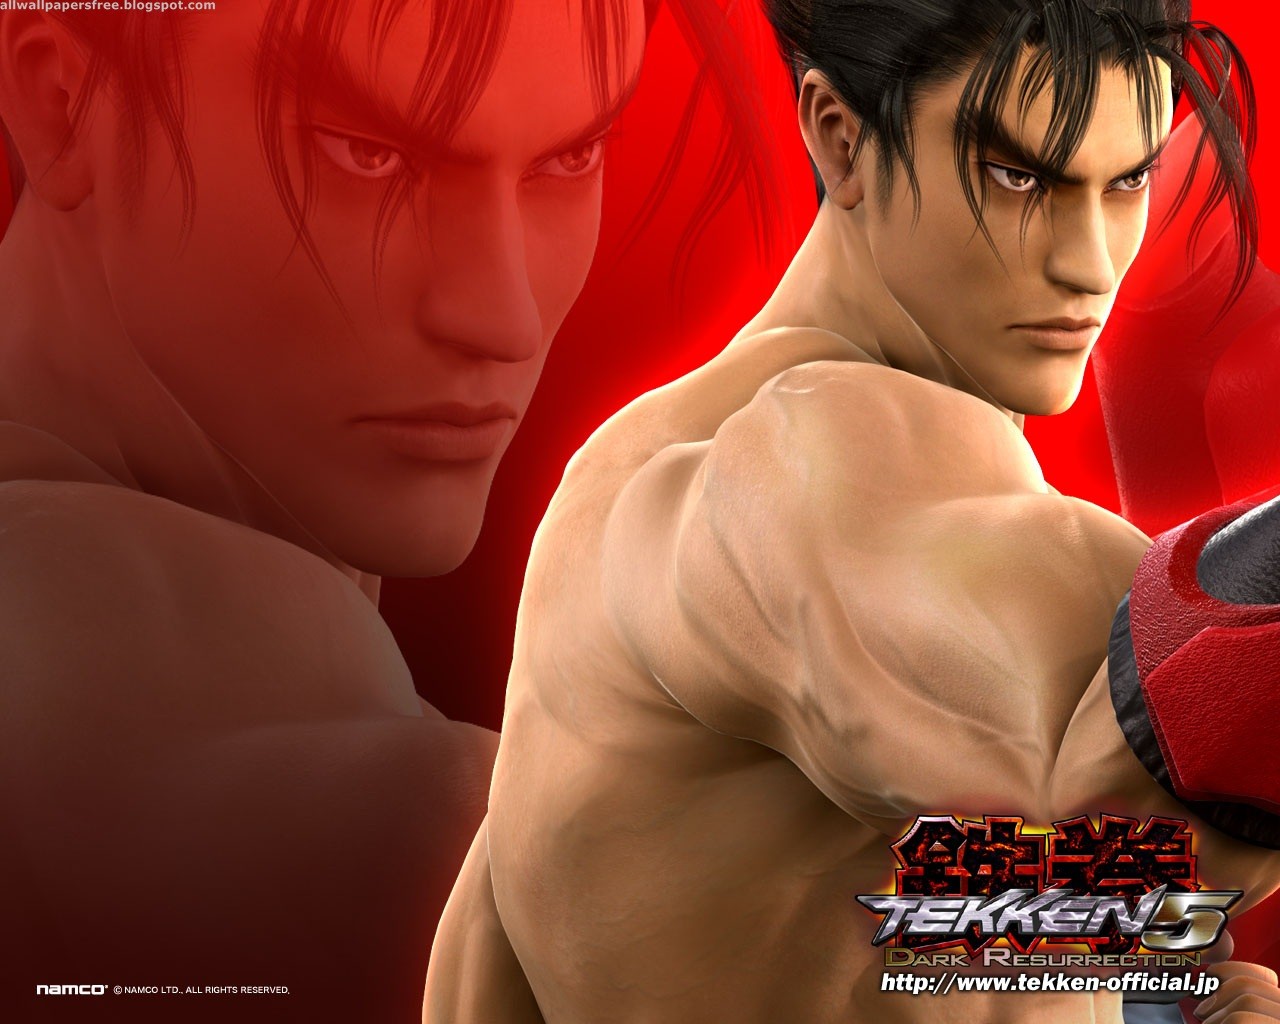 Melhores papéis de parede de Tekken 5: Dark Resurrection para tela do telefone